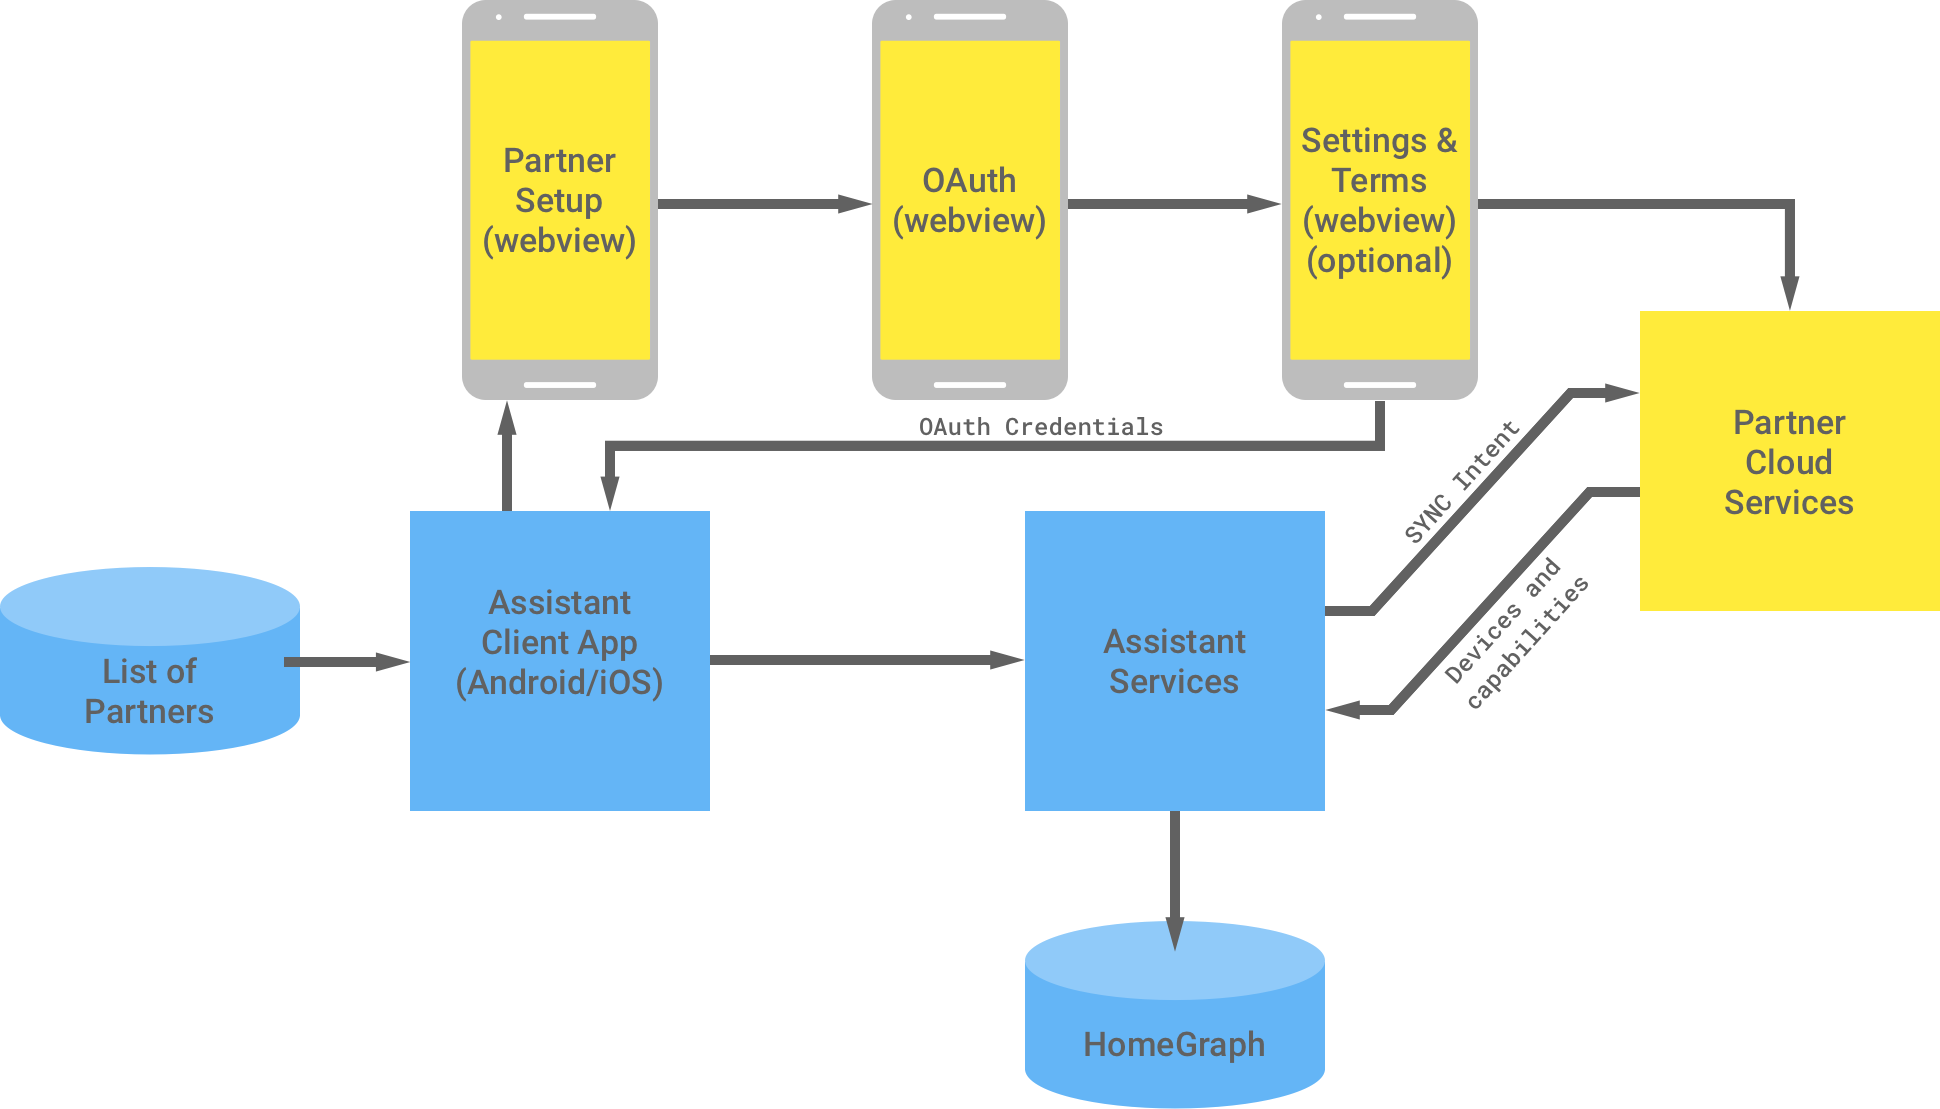 Nesta figura, mostramos a interação entre as infraestruturas do Google e do parceiro. Na infraestrutura do Google, há uma lista de parceiros disponível para o app cliente do Assistente, que passa para a infraestrutura do parceiro para concluir a autenticação OAuth. A autenticação OAuth do lado do parceiro é o WebView de configuração do parceiro, o WebView OAuth, os termos e configurações opcionais e os serviços de nuvem do parceiro. Em seguida, a infraestrutura do parceiro
    retorna as credenciais de OAuth para o app cliente do Assistente. Os serviços
    em nuvem do parceiro enviam os dispositivos e recursos disponíveis para os serviços do Assistente,
    que armazena as informações no Home Graph.